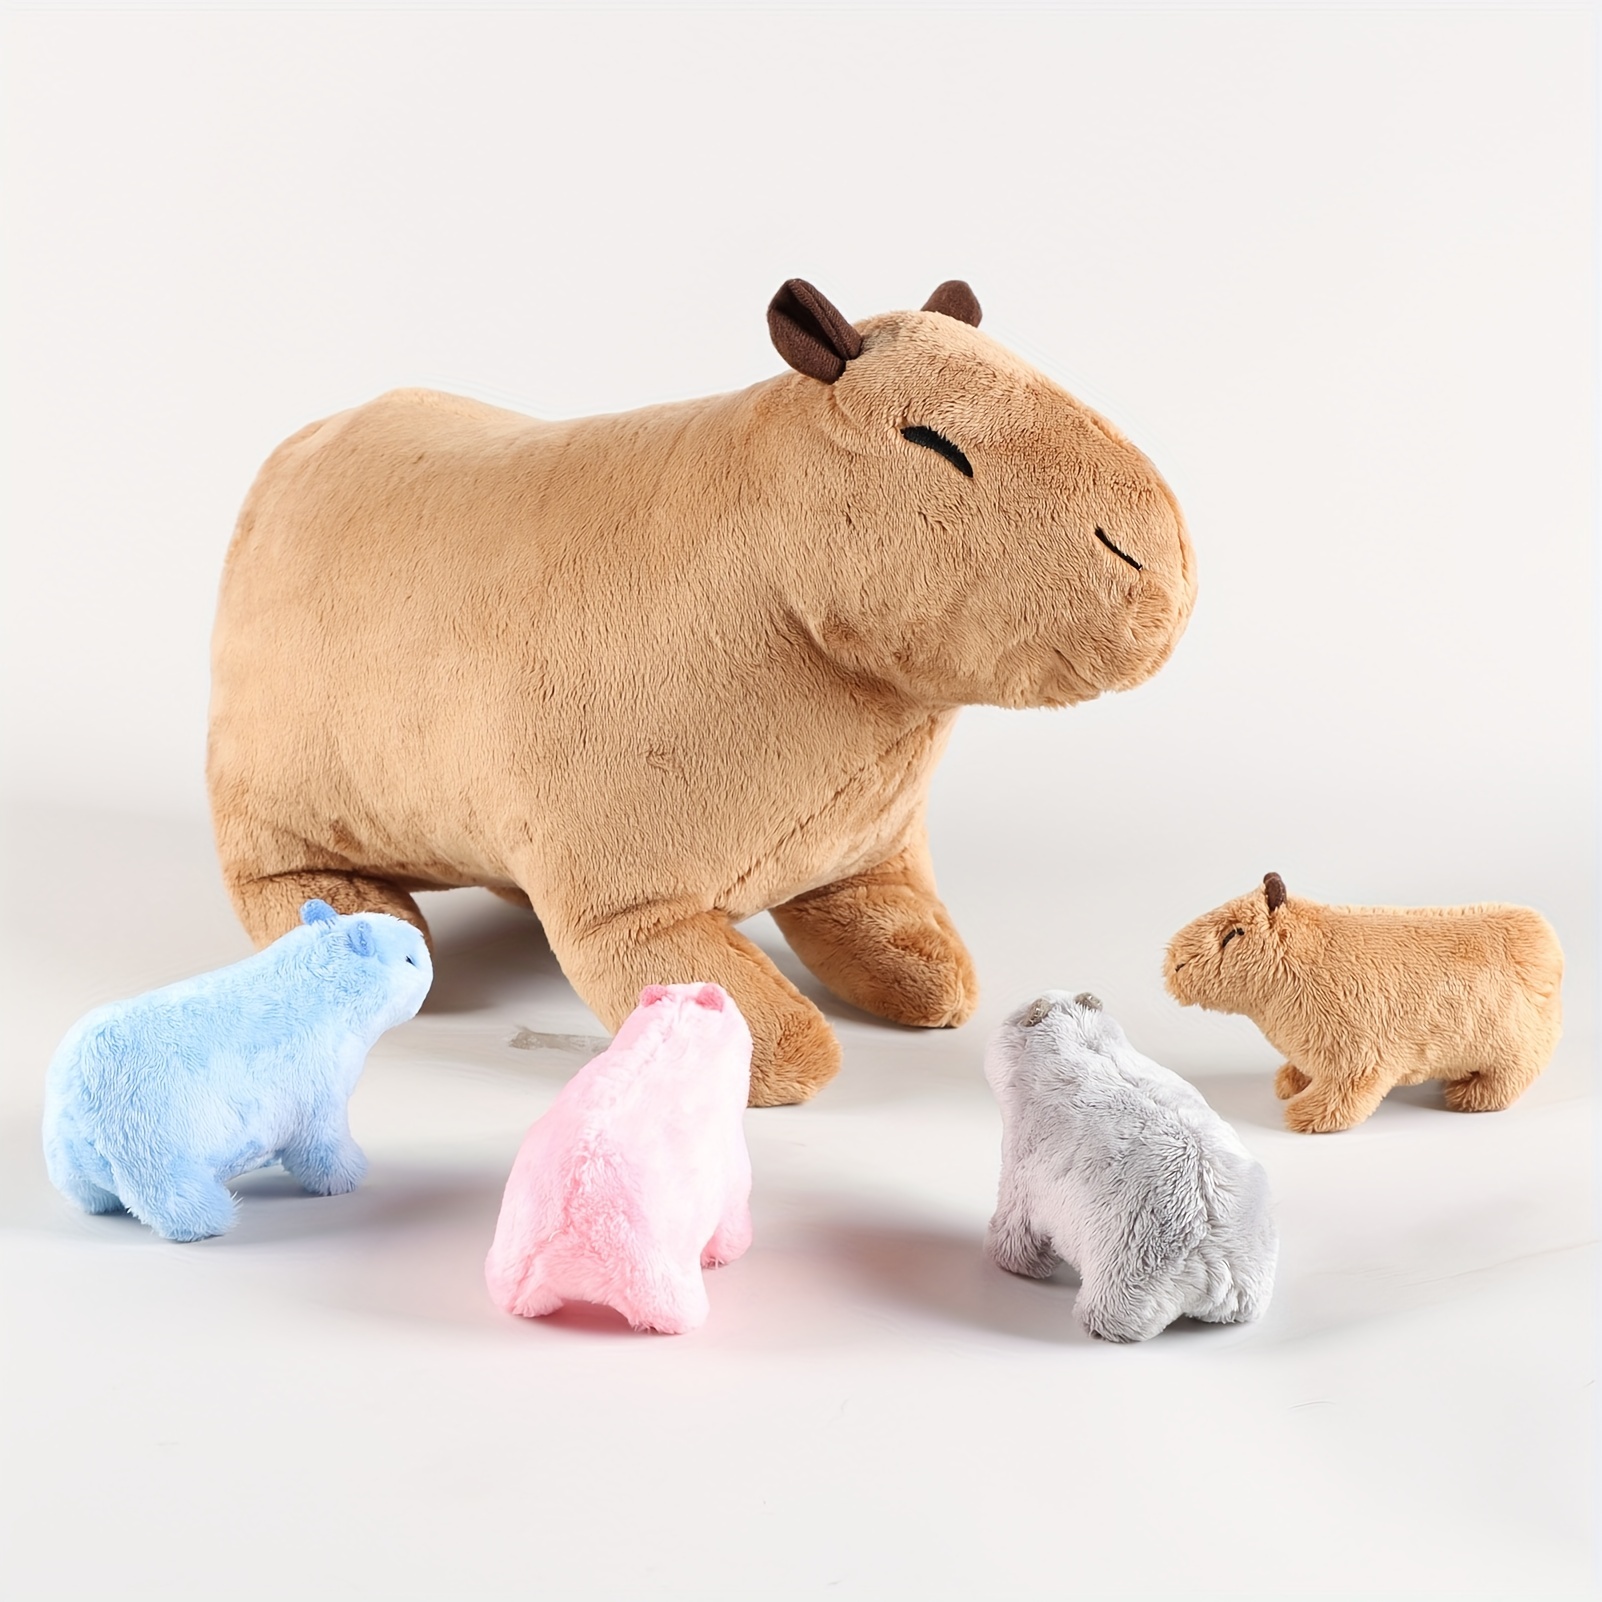 18cm Capybara Rodentausgestopftes Spielzeug weiches Stofftier Kawaii Kinder  toypat Capybara plush Mädchen Weihnachts geschenk Familien zimmer Dekor -  AliExpress